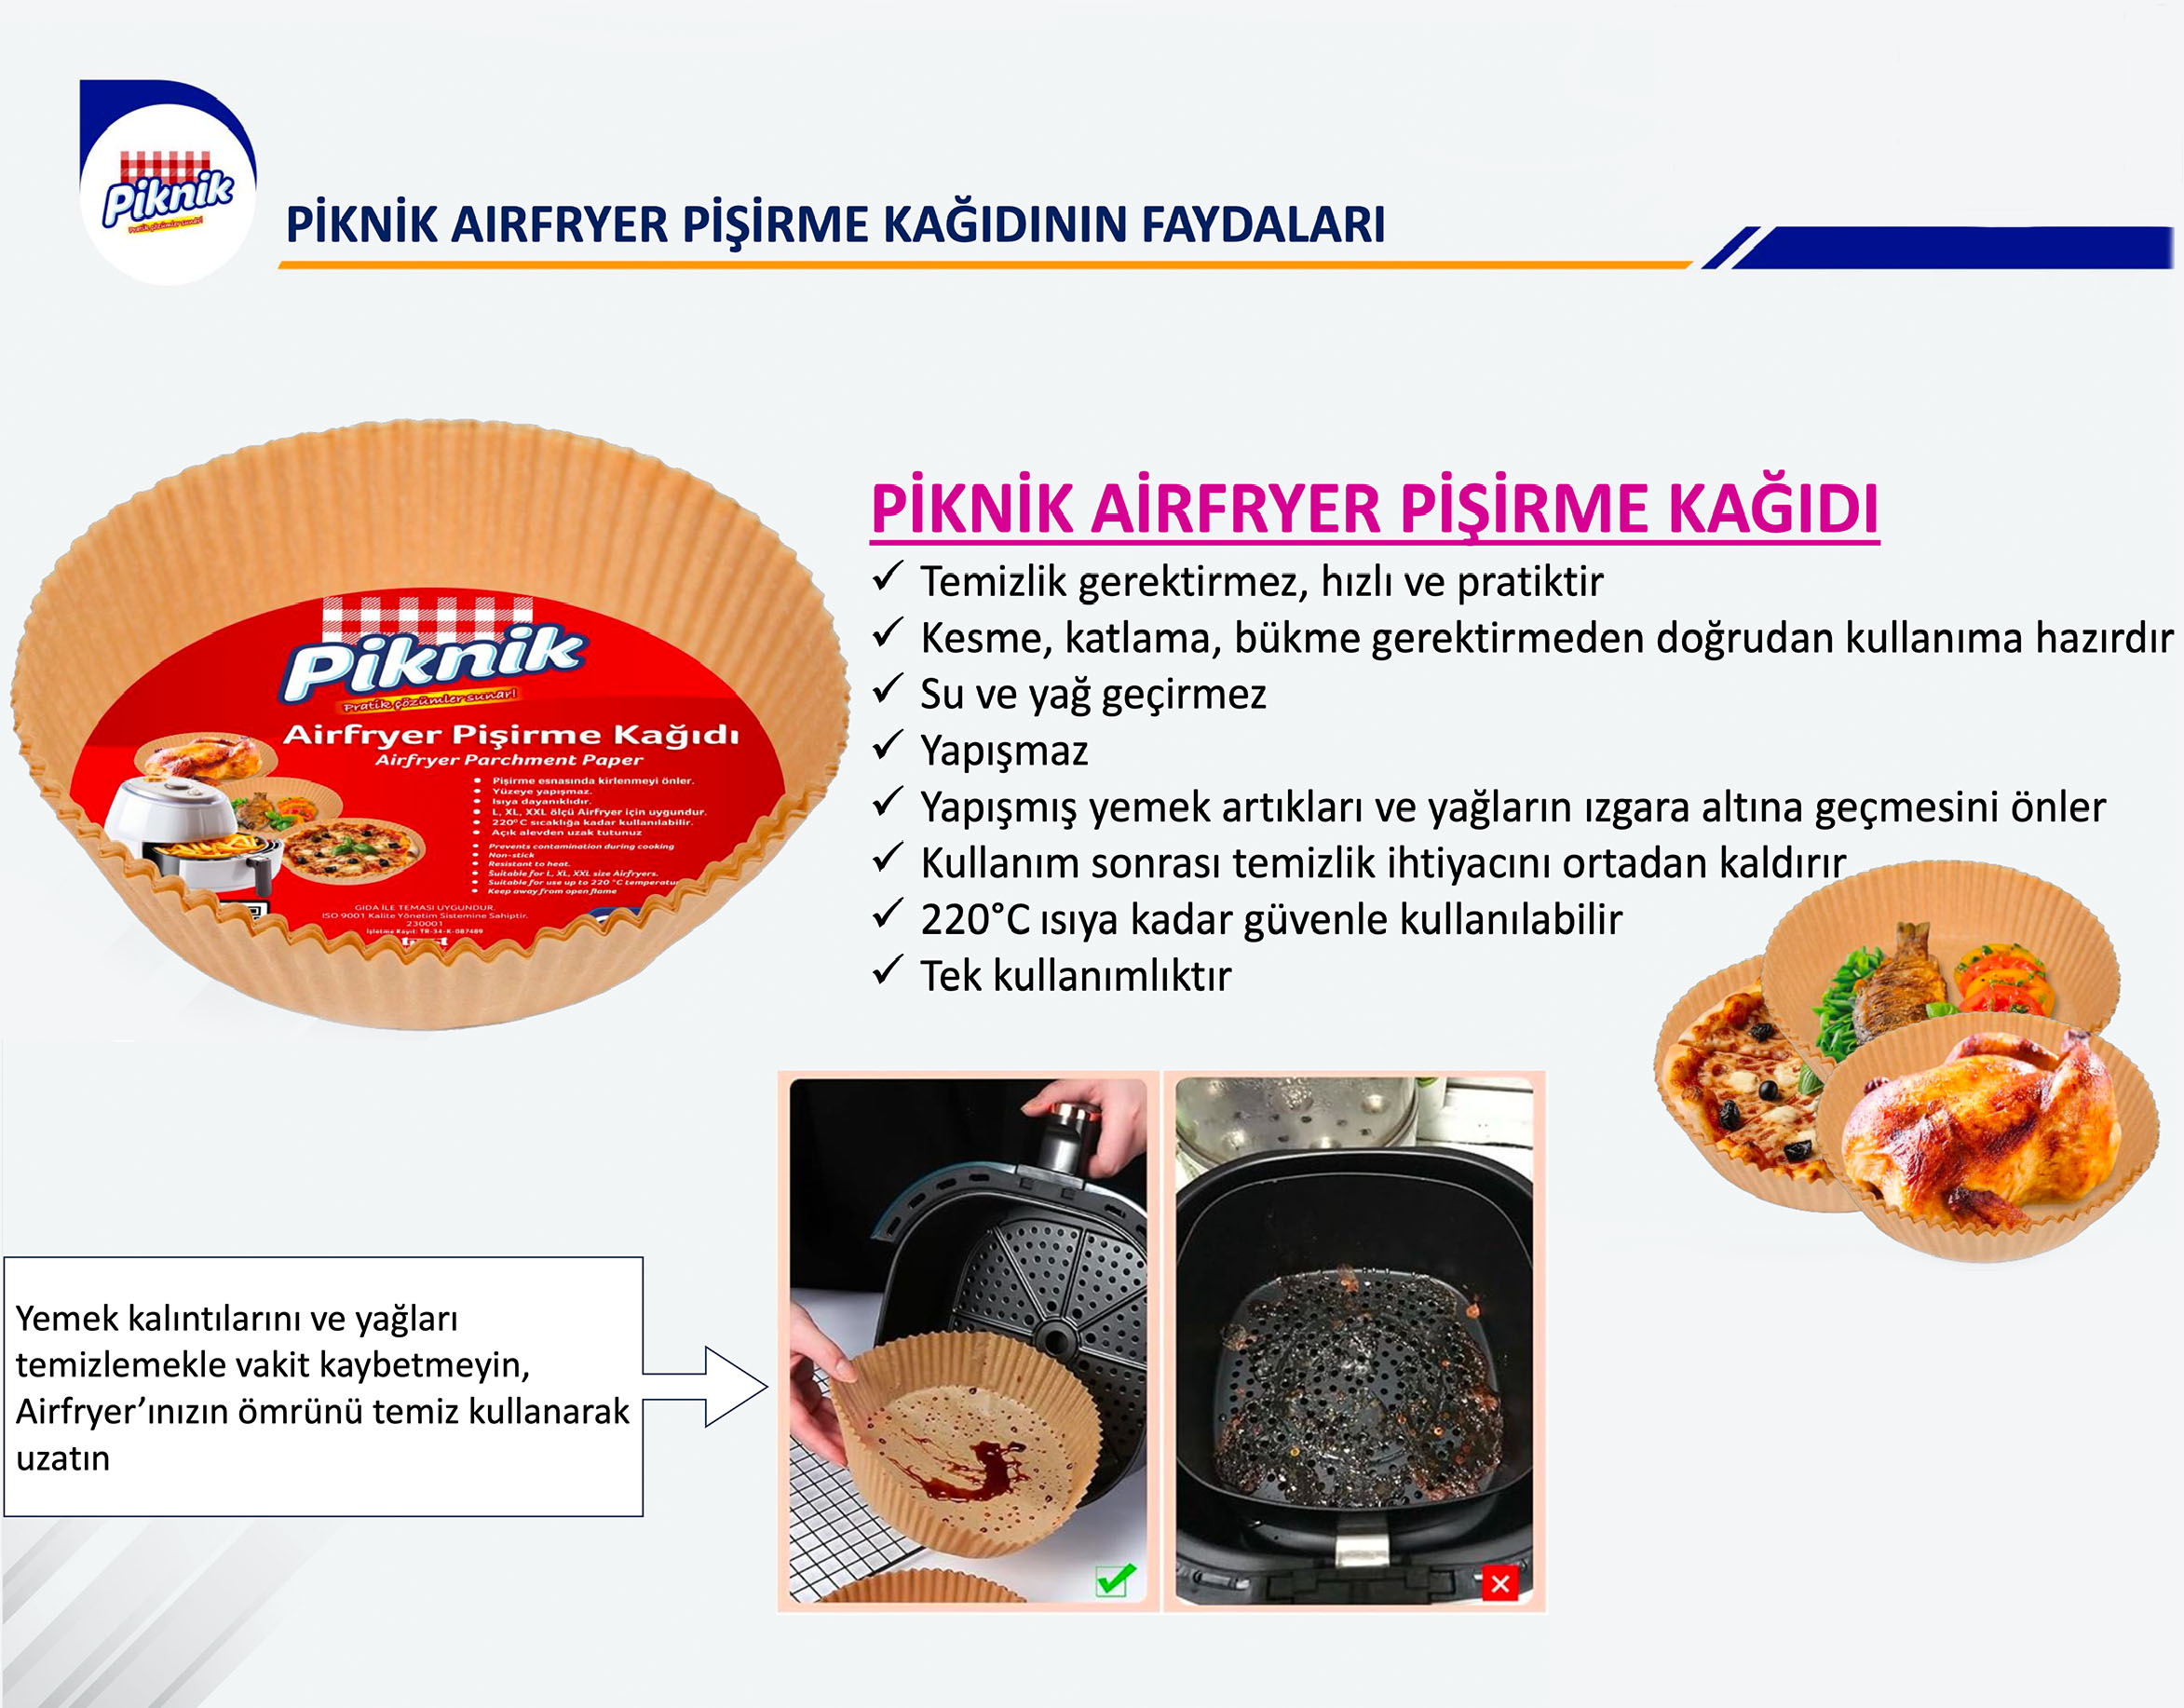 Piknik Airfryer Pişirme Kağıdı.jpg (464 KB)